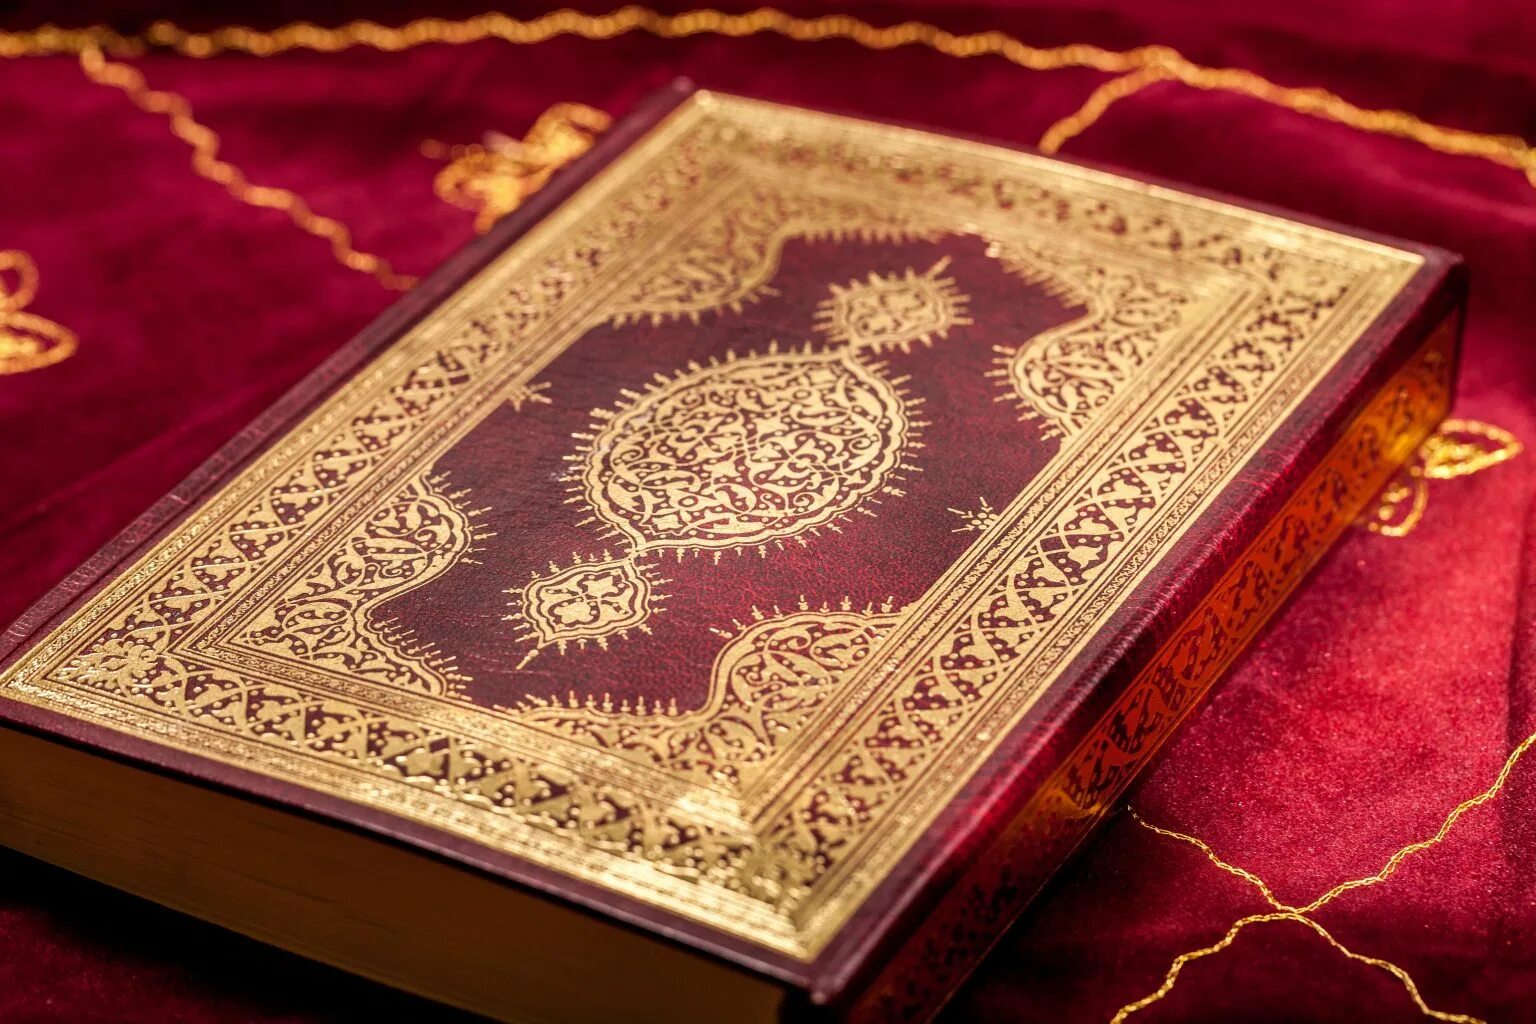 Құран кәрім. Священное Писание мусульман Коран. Kepah.